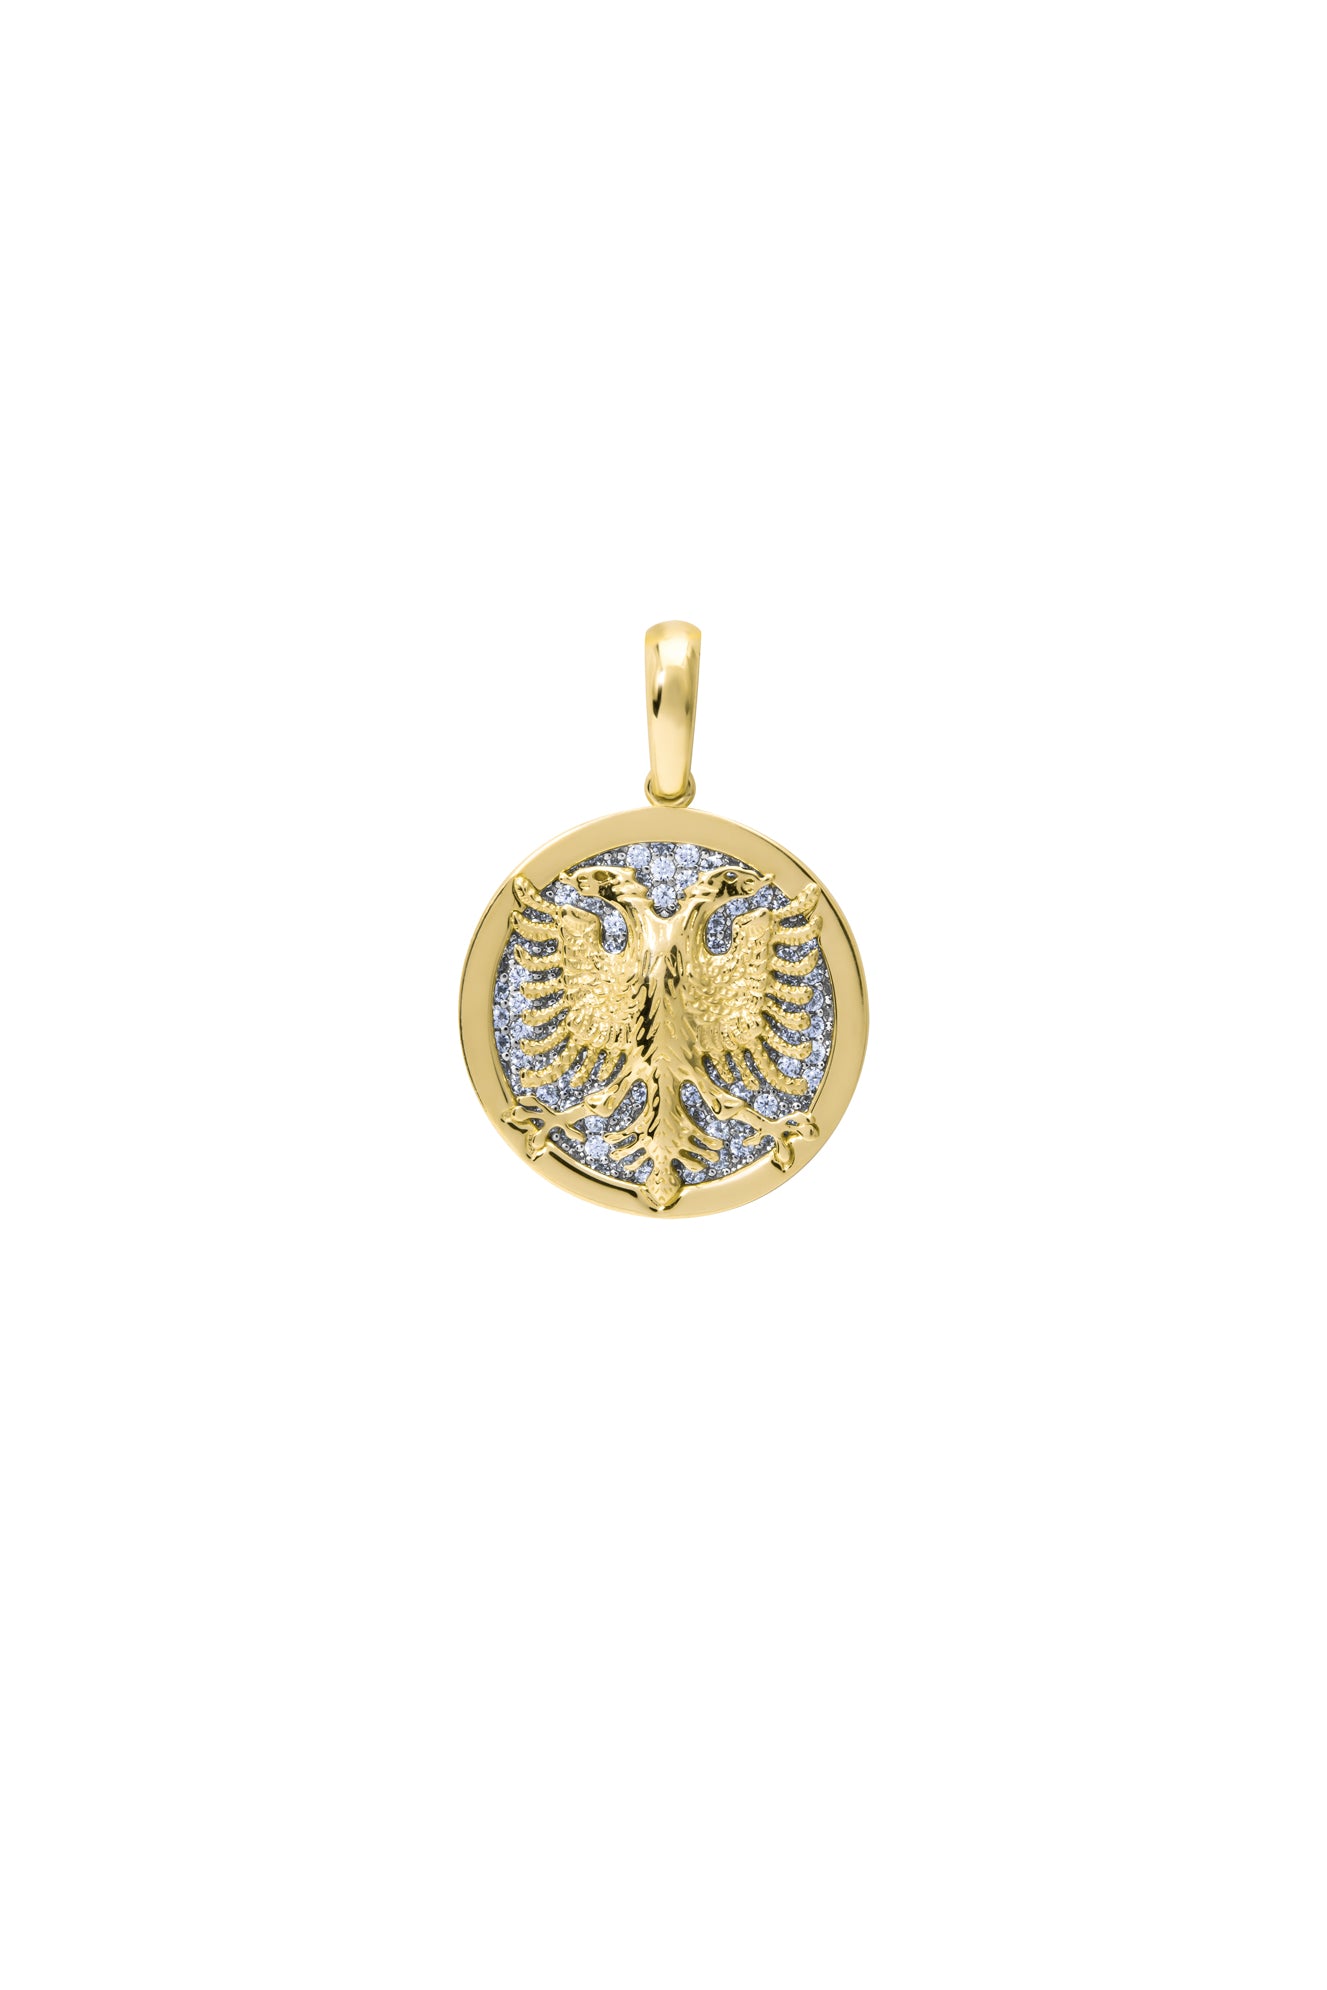 Golden Era Medallion | Medium - Serma International